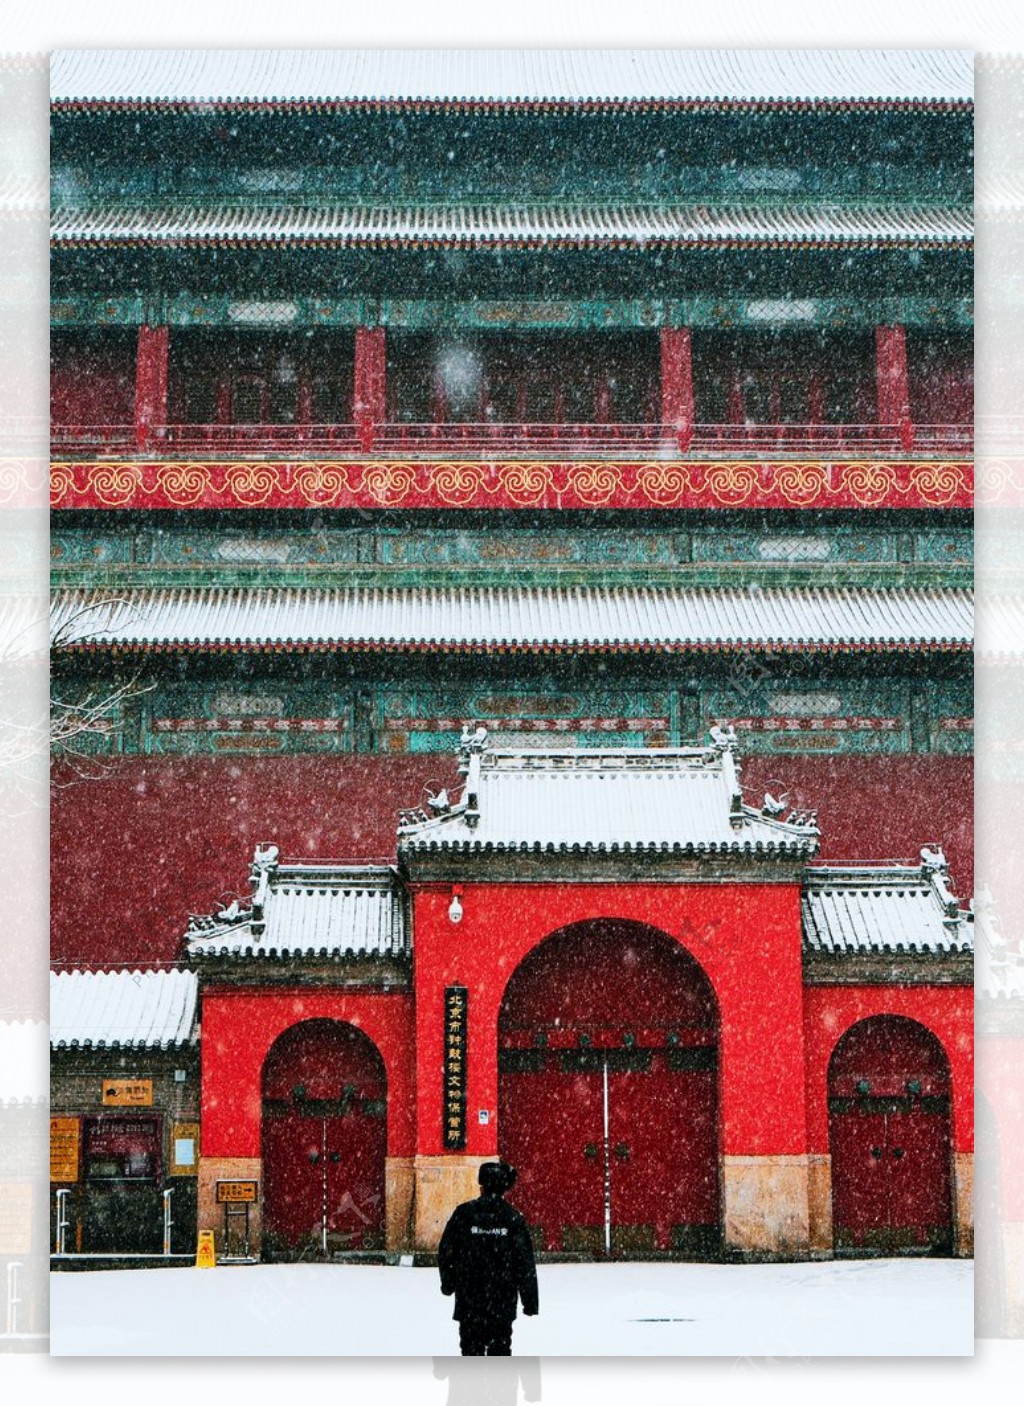 下雪的老北京